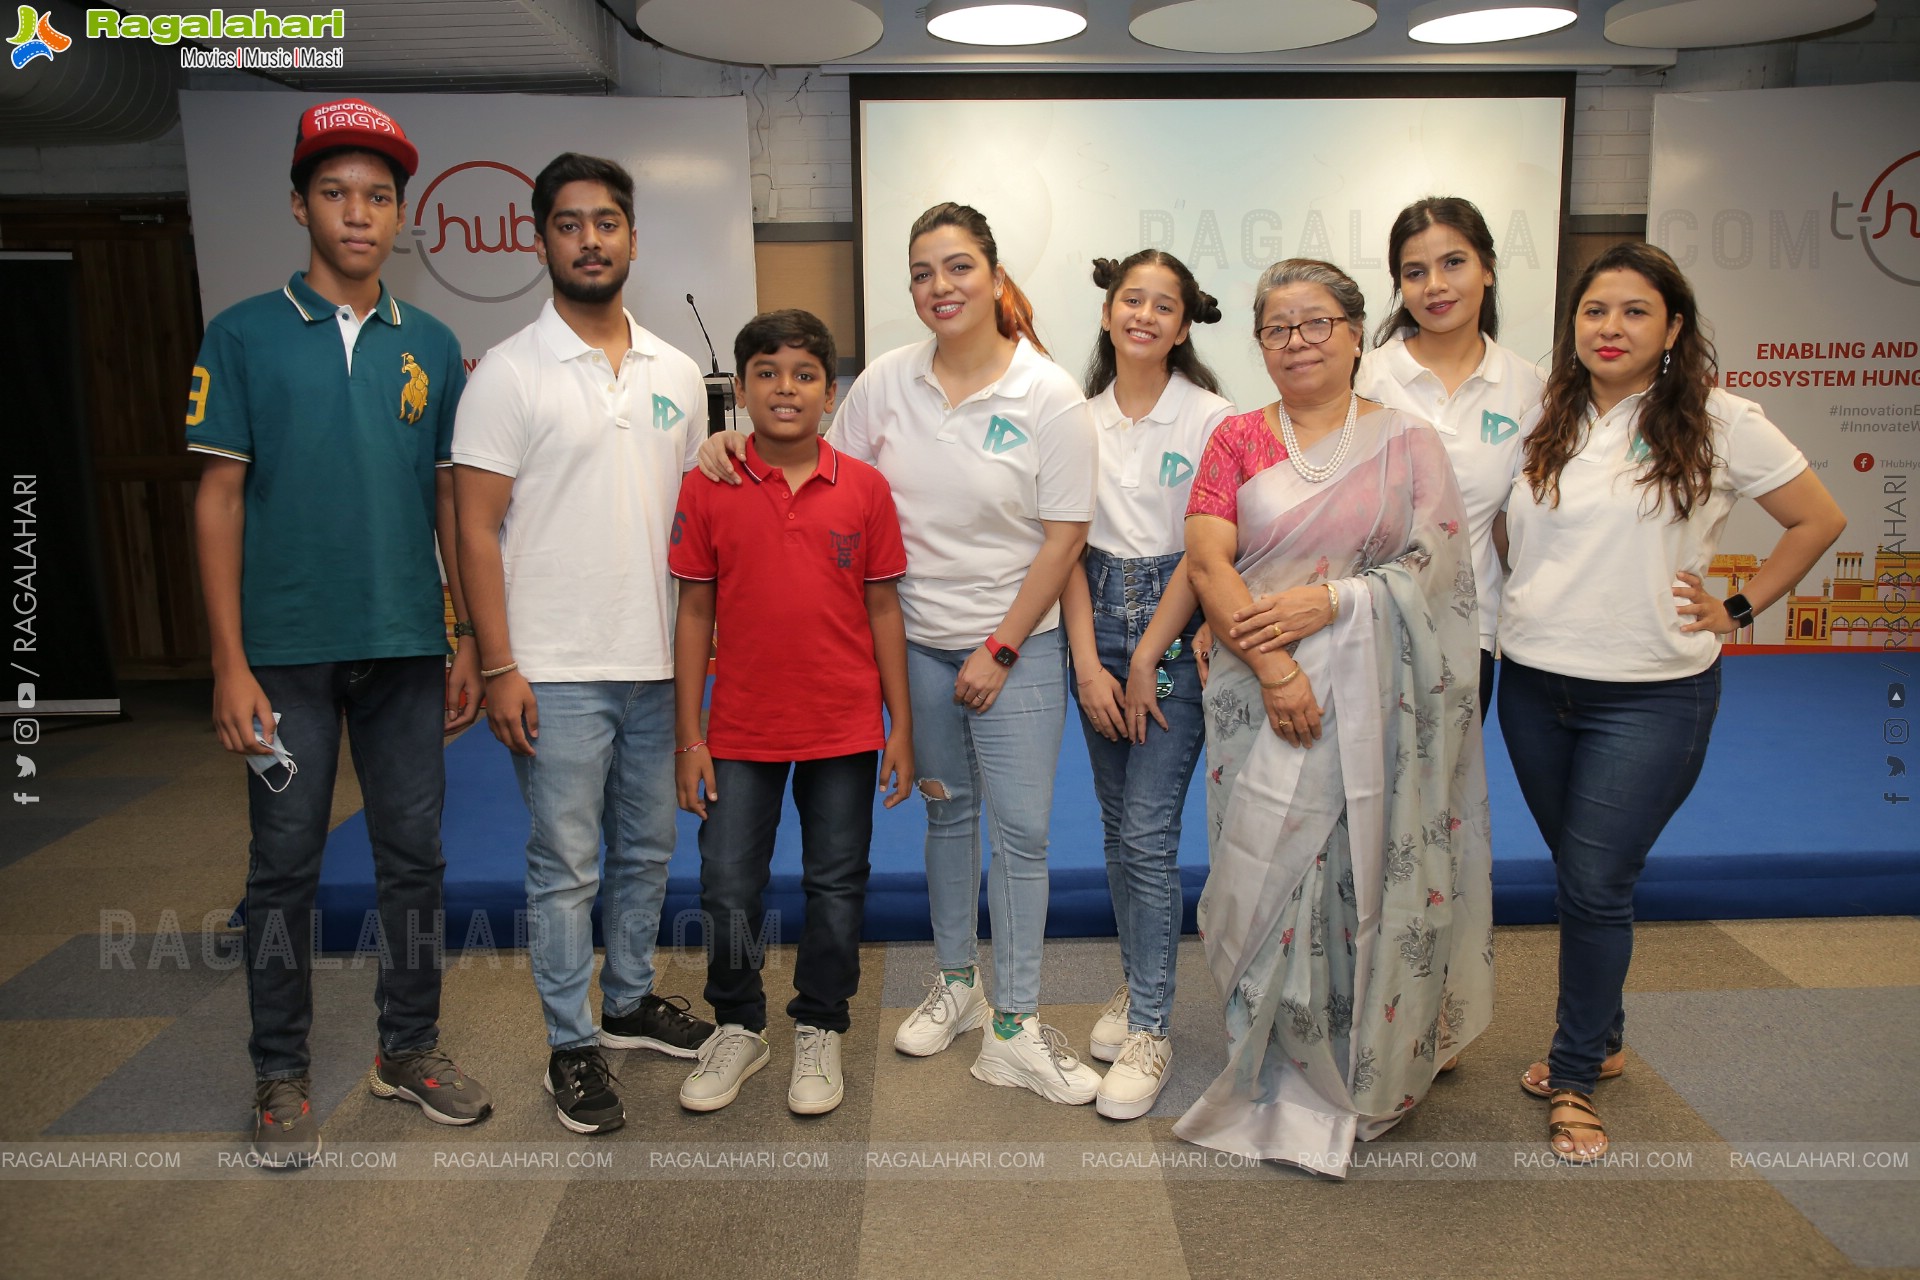 FilmArtsy App Launch Event at T-Hub, Hyderabad